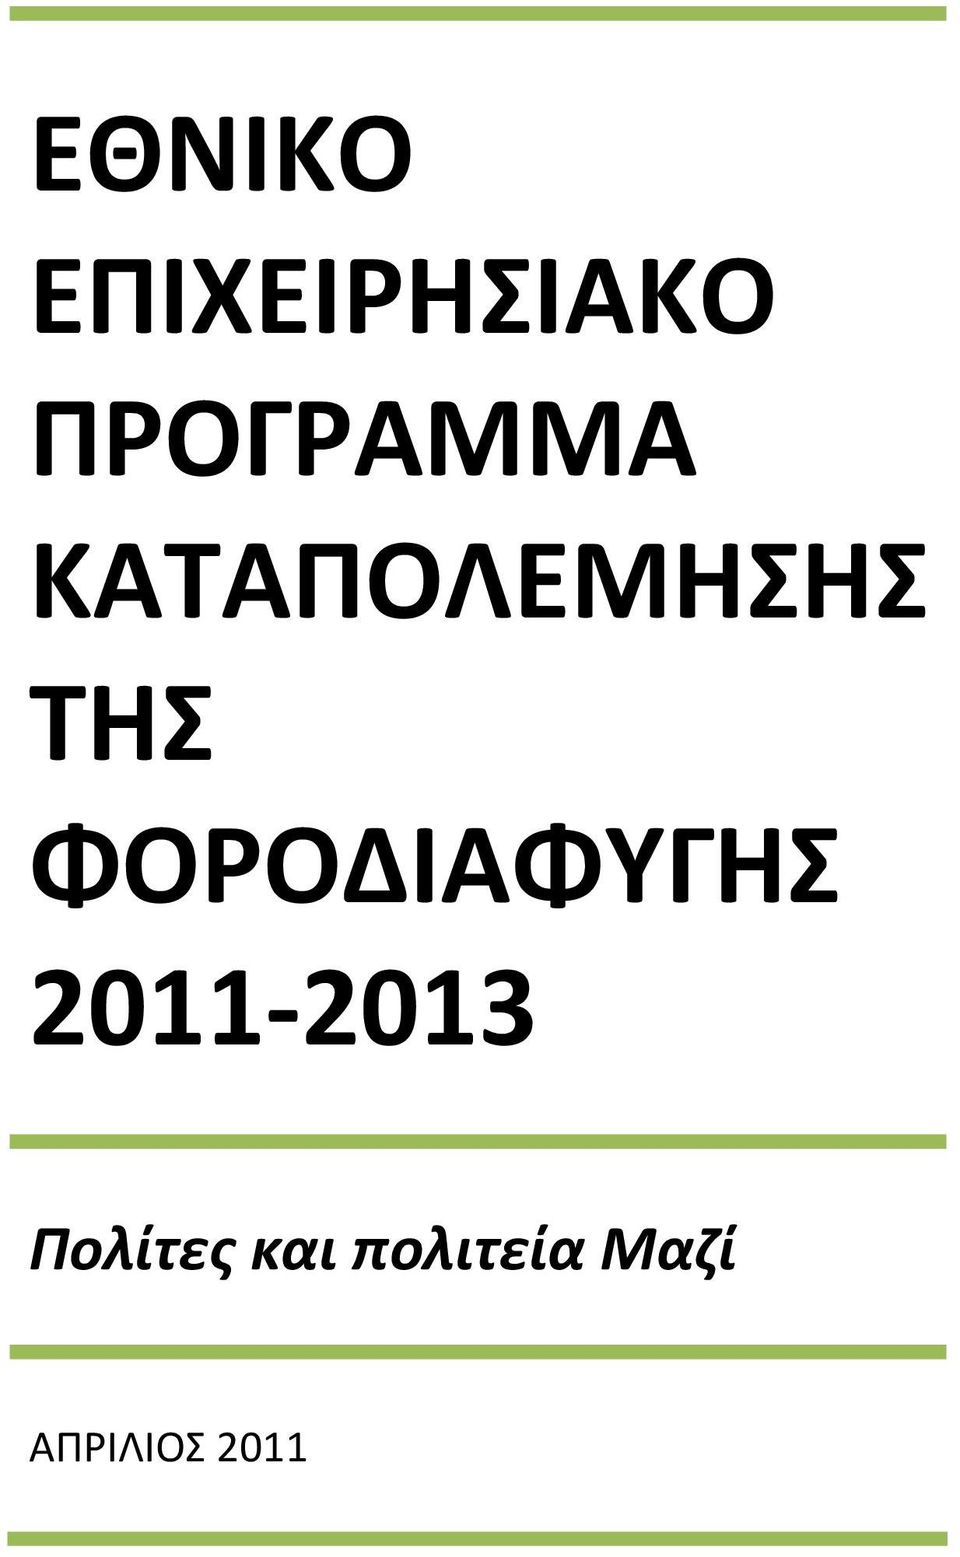 ΦΟΡΟΔΙΑΦΥΓΗΣ 2011-2013